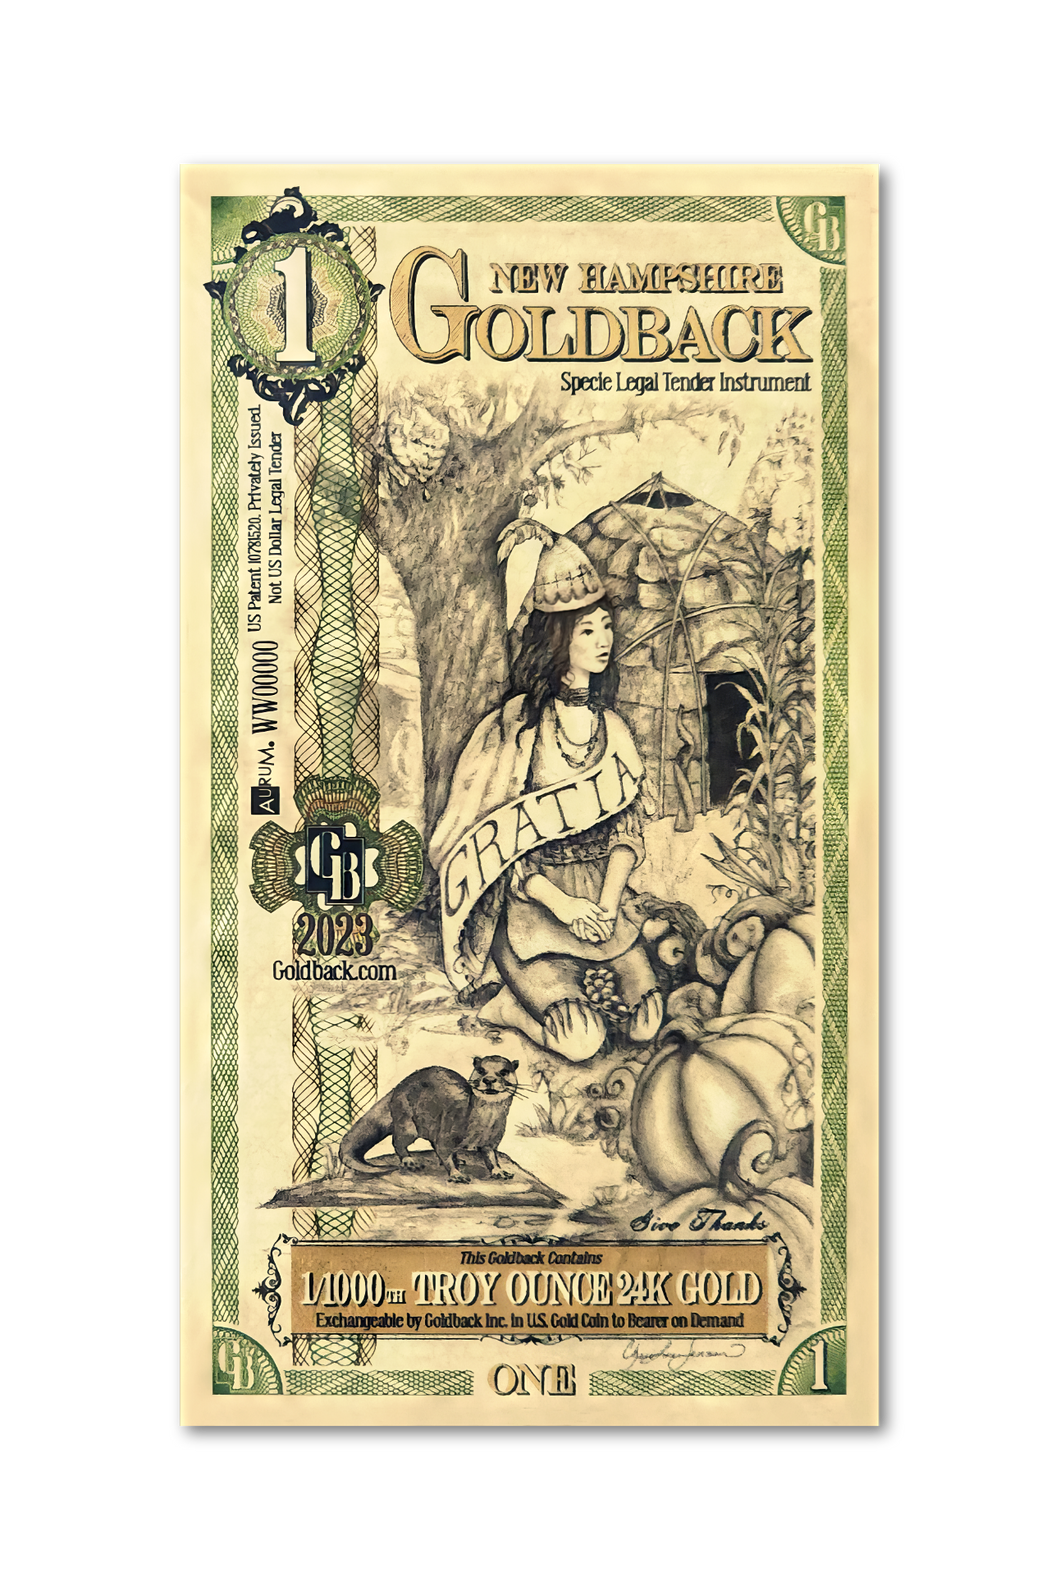 1 New Hampshire Goldback (10 Pack) - Aurum Gold Note (24k)- Zion Metals